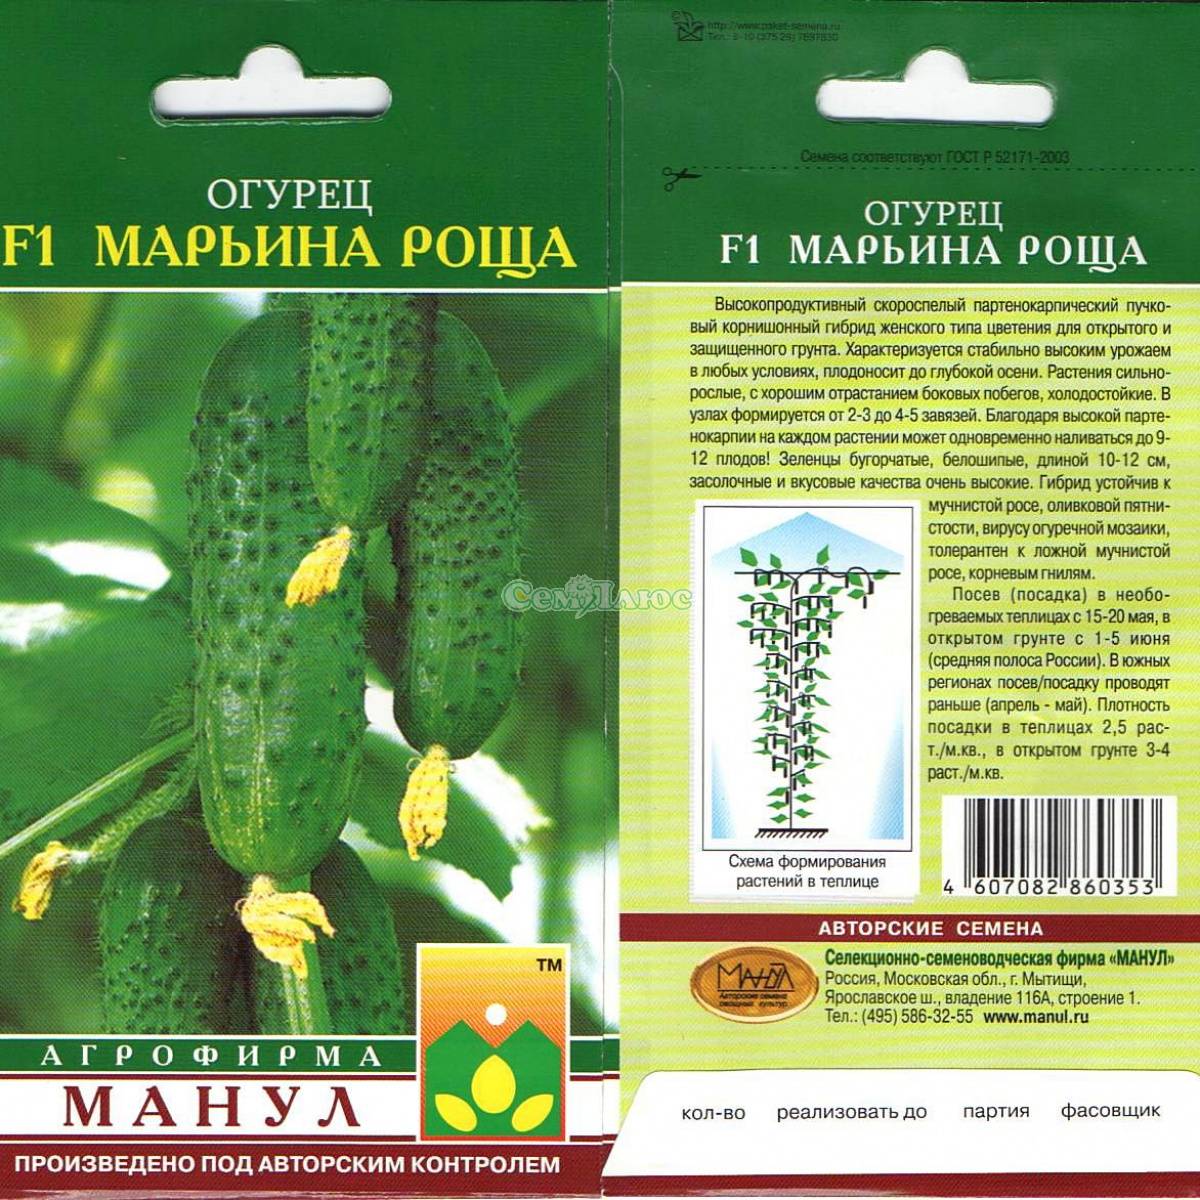 Огурец марьина роща f1: описание сорта, выращивание, фото, отзывы